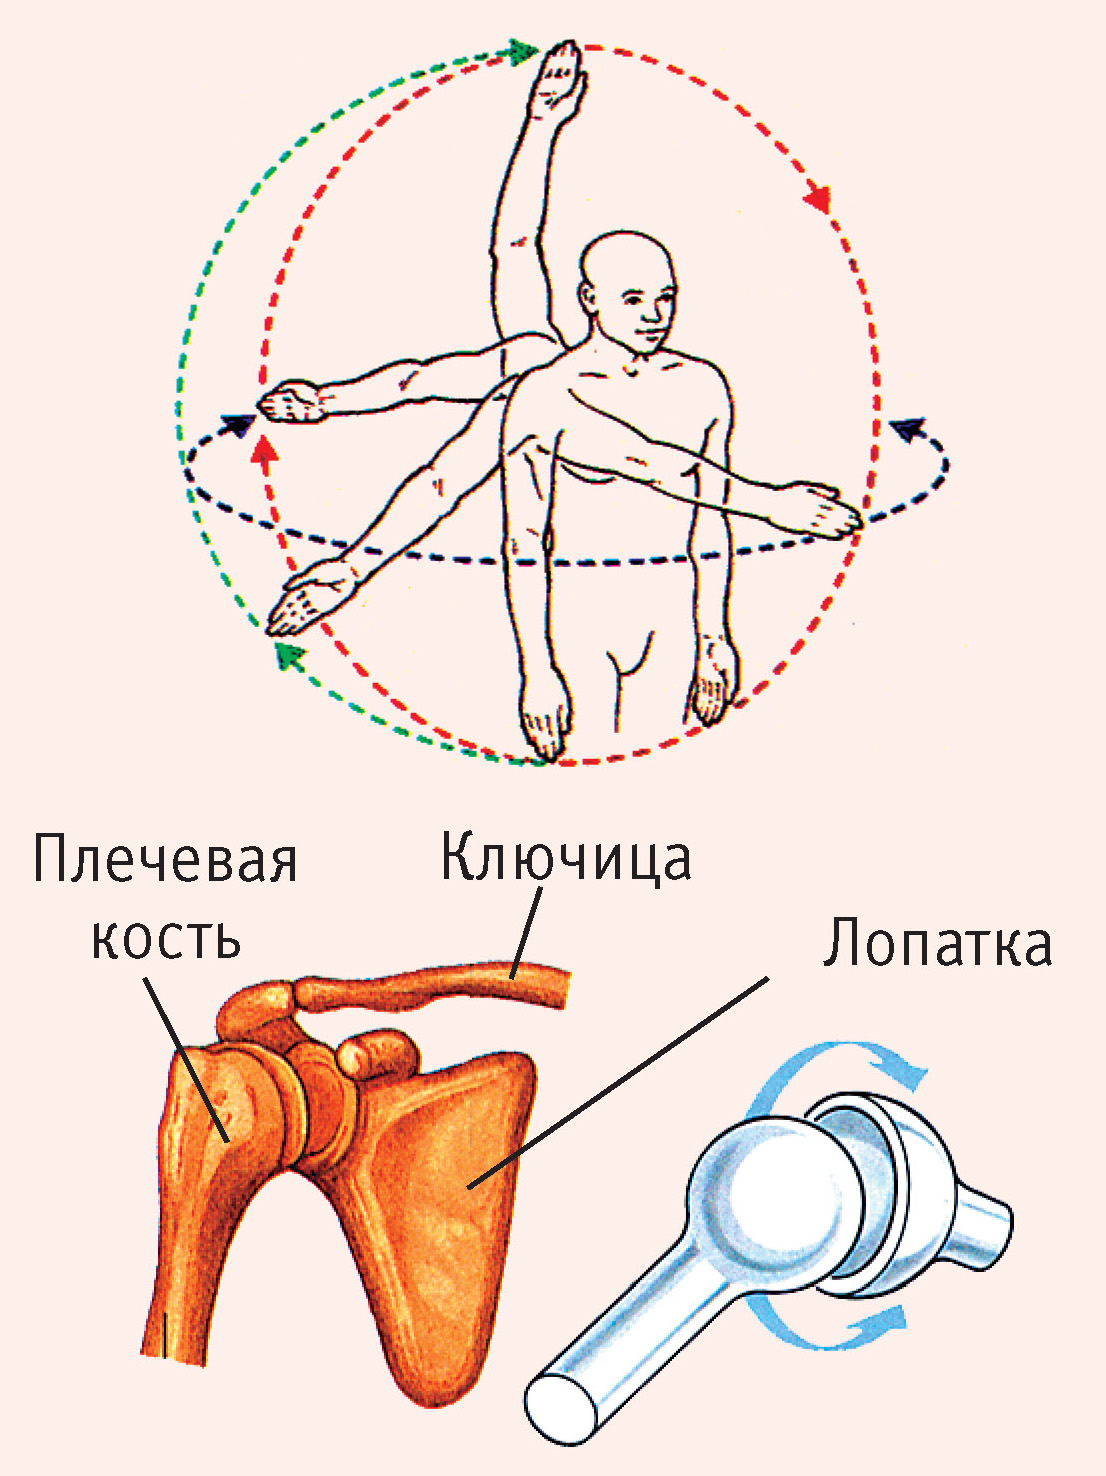 Рис. 4. Плечевой сустав (шаровидный): лопатка, плечевая кость